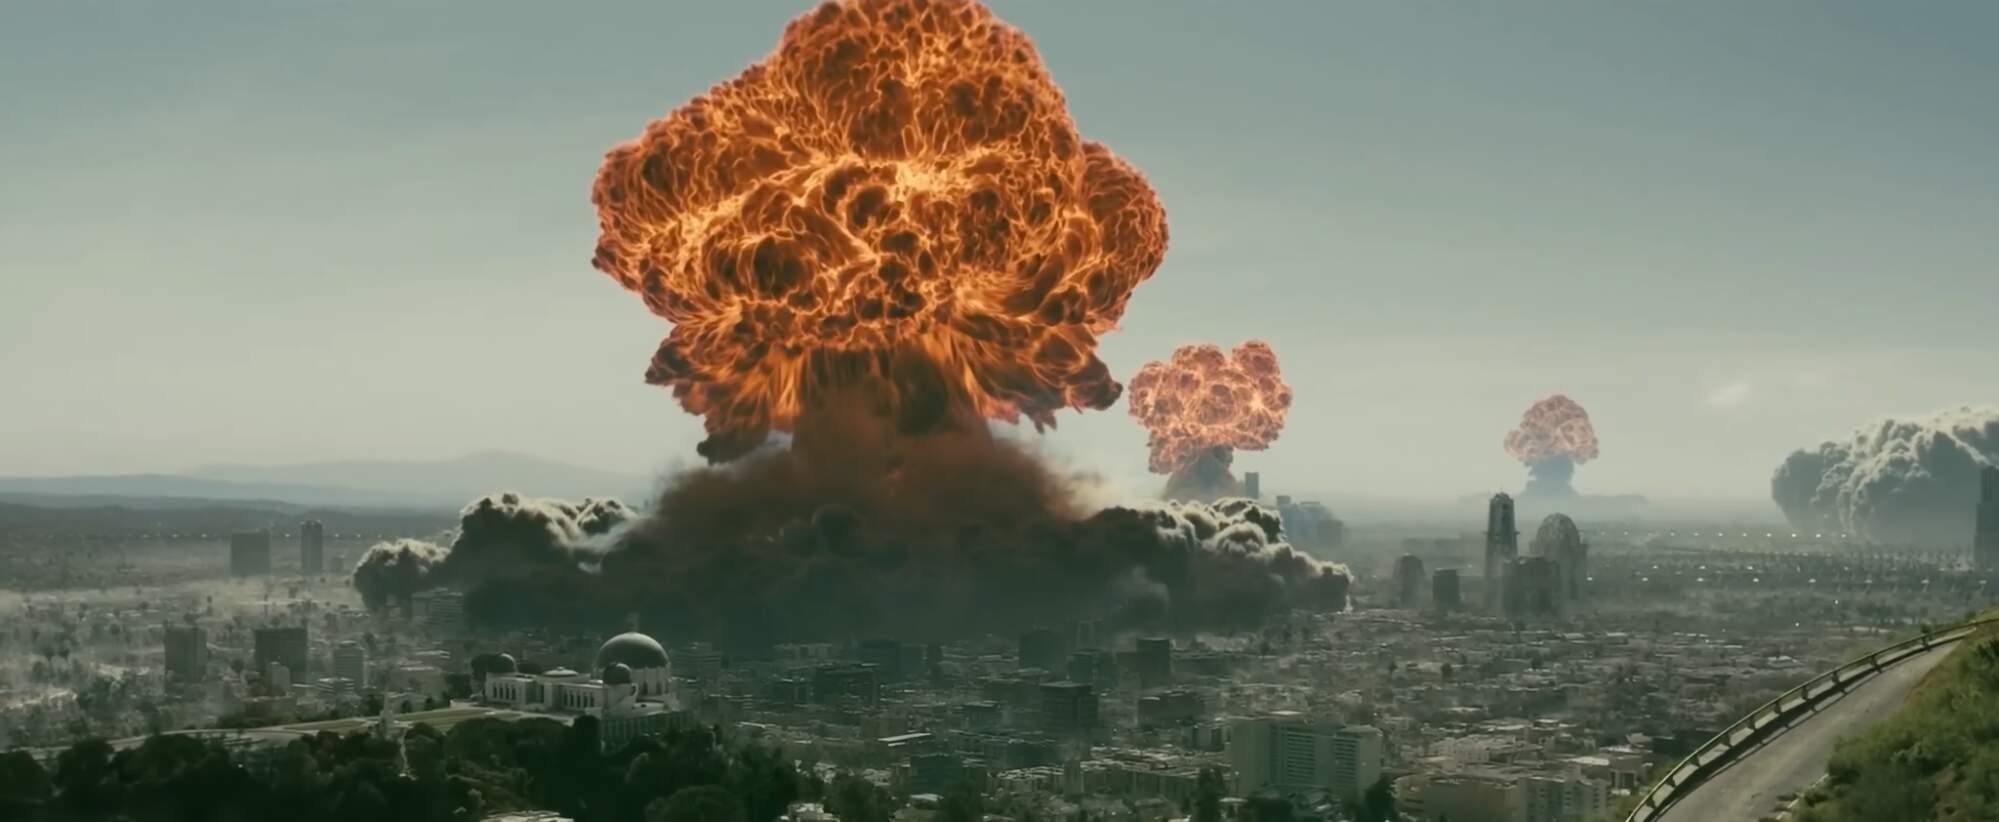 10 interessante Fakten über Fallout - Wer begann den Atomkrieg im Fallout-Universum?